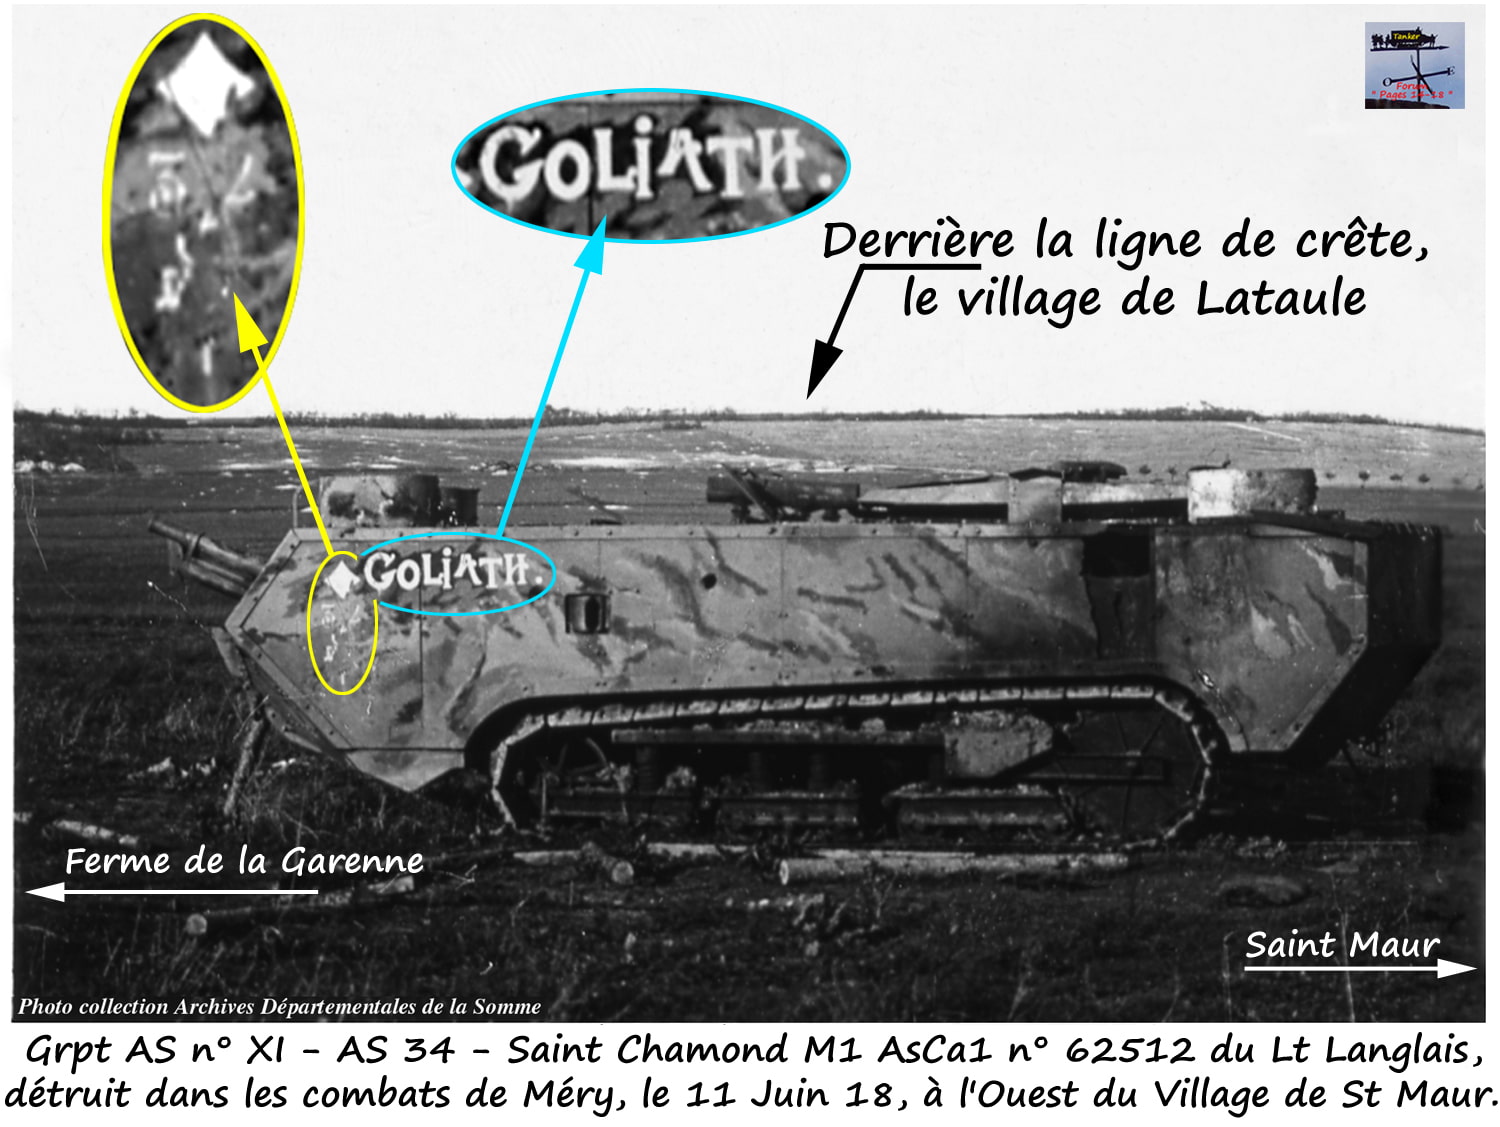 Grpt XI - AS 34 - St Chamond M1 AsCa1 n° 62512 Goliath (01)-min.jpg